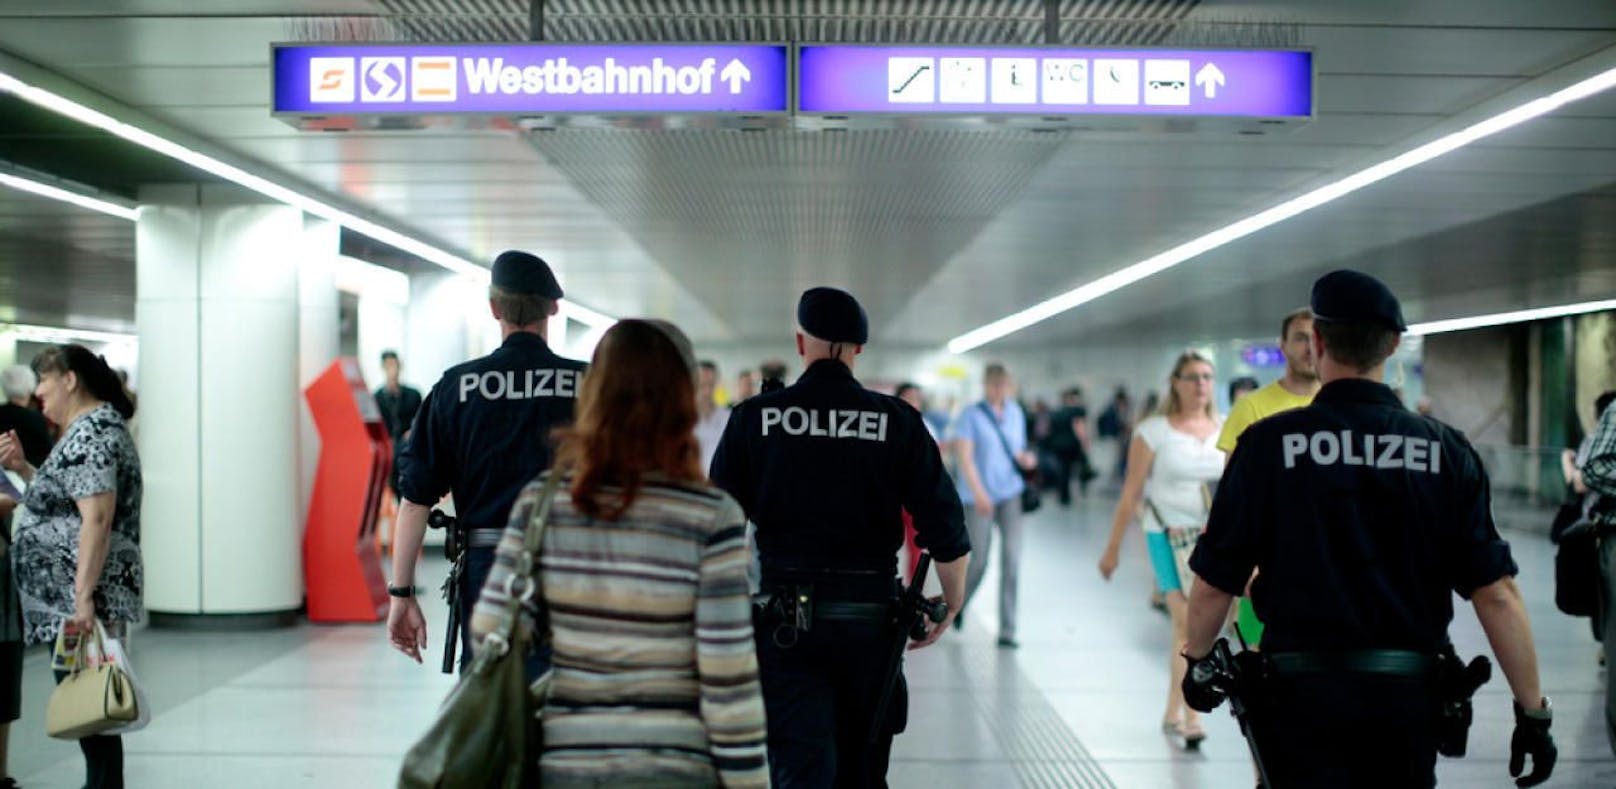 Die Polizei fasste die Tobende am Westbahnhof. (Symbolfoto).